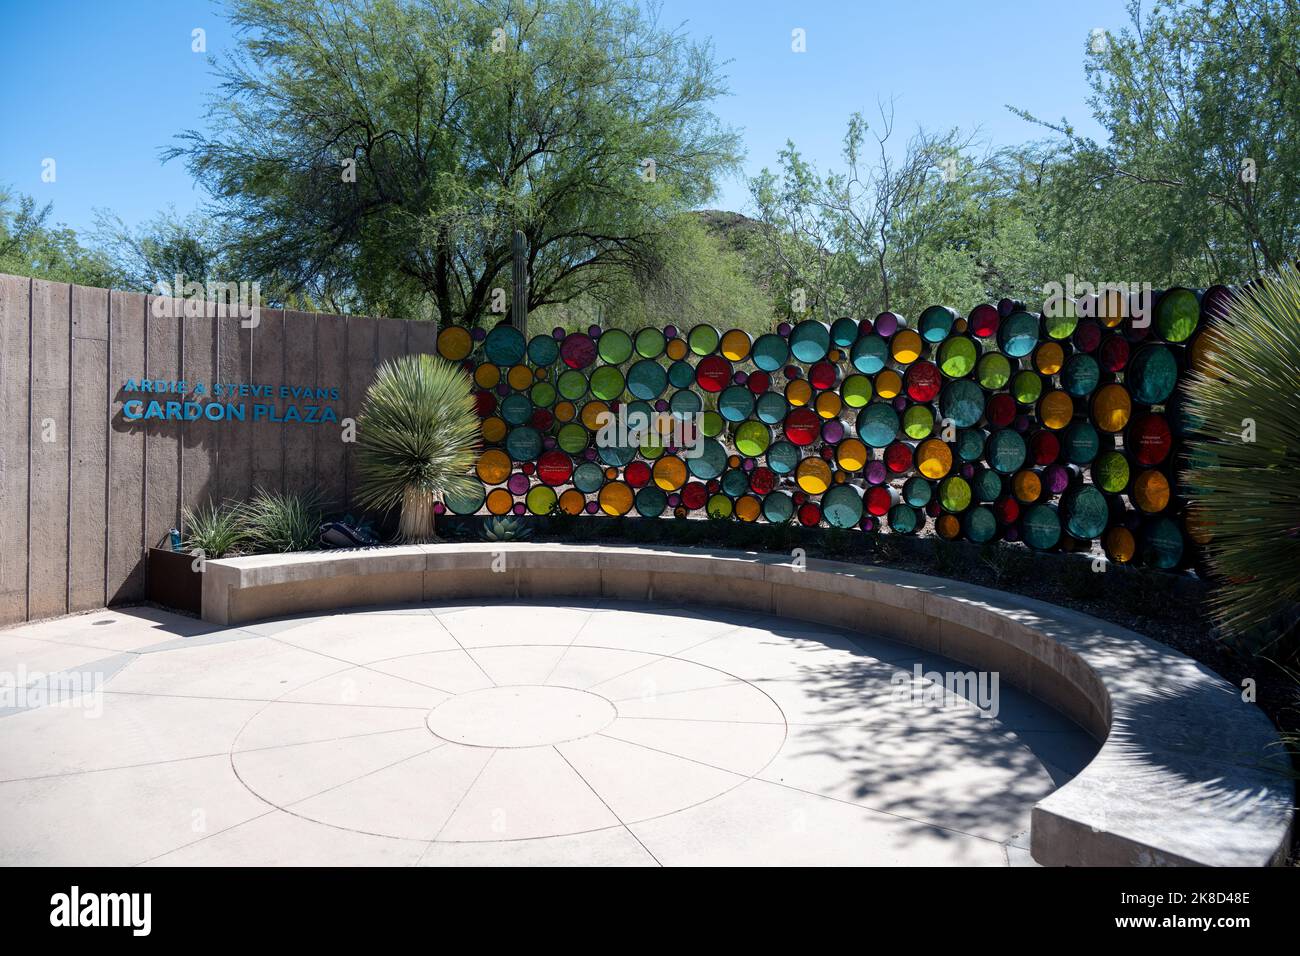 L'Ardie et Steve Evans Cardon Plaza sont situés au Desert Botanical Garden Banque D'Images